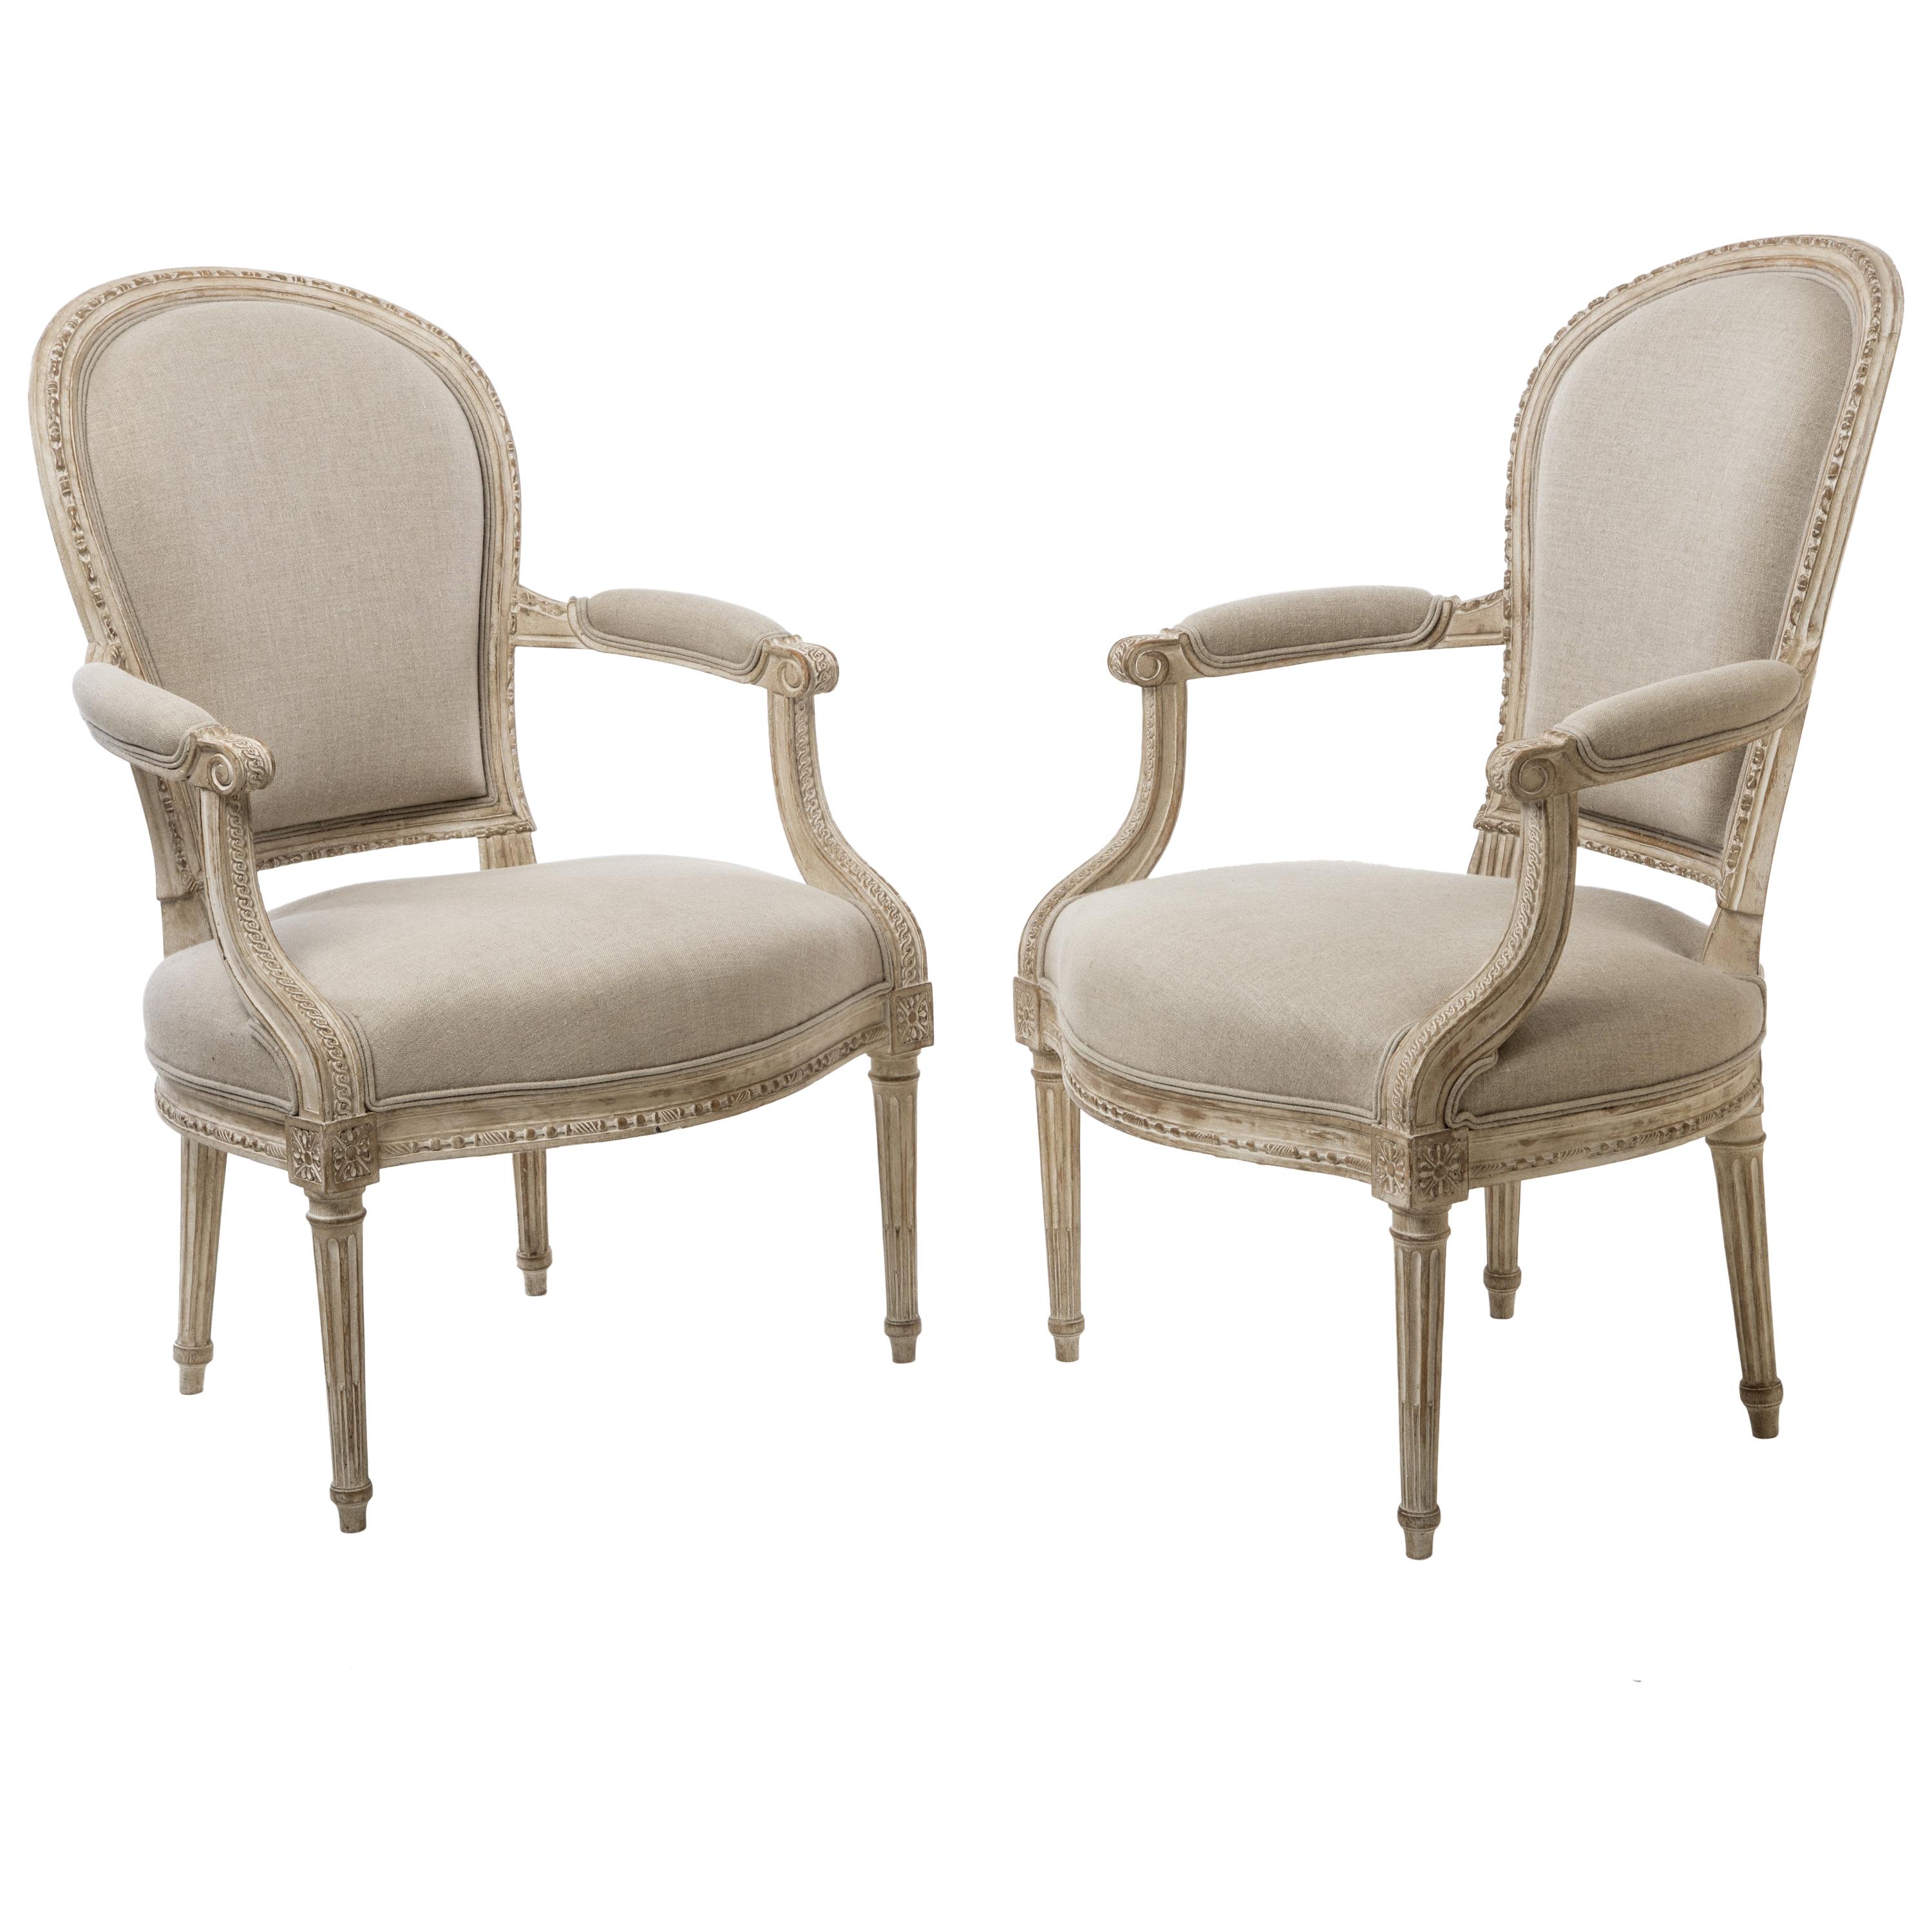 Ein Paar Cabriolet-Sessel von Delaisement im Stil von Louis XVI